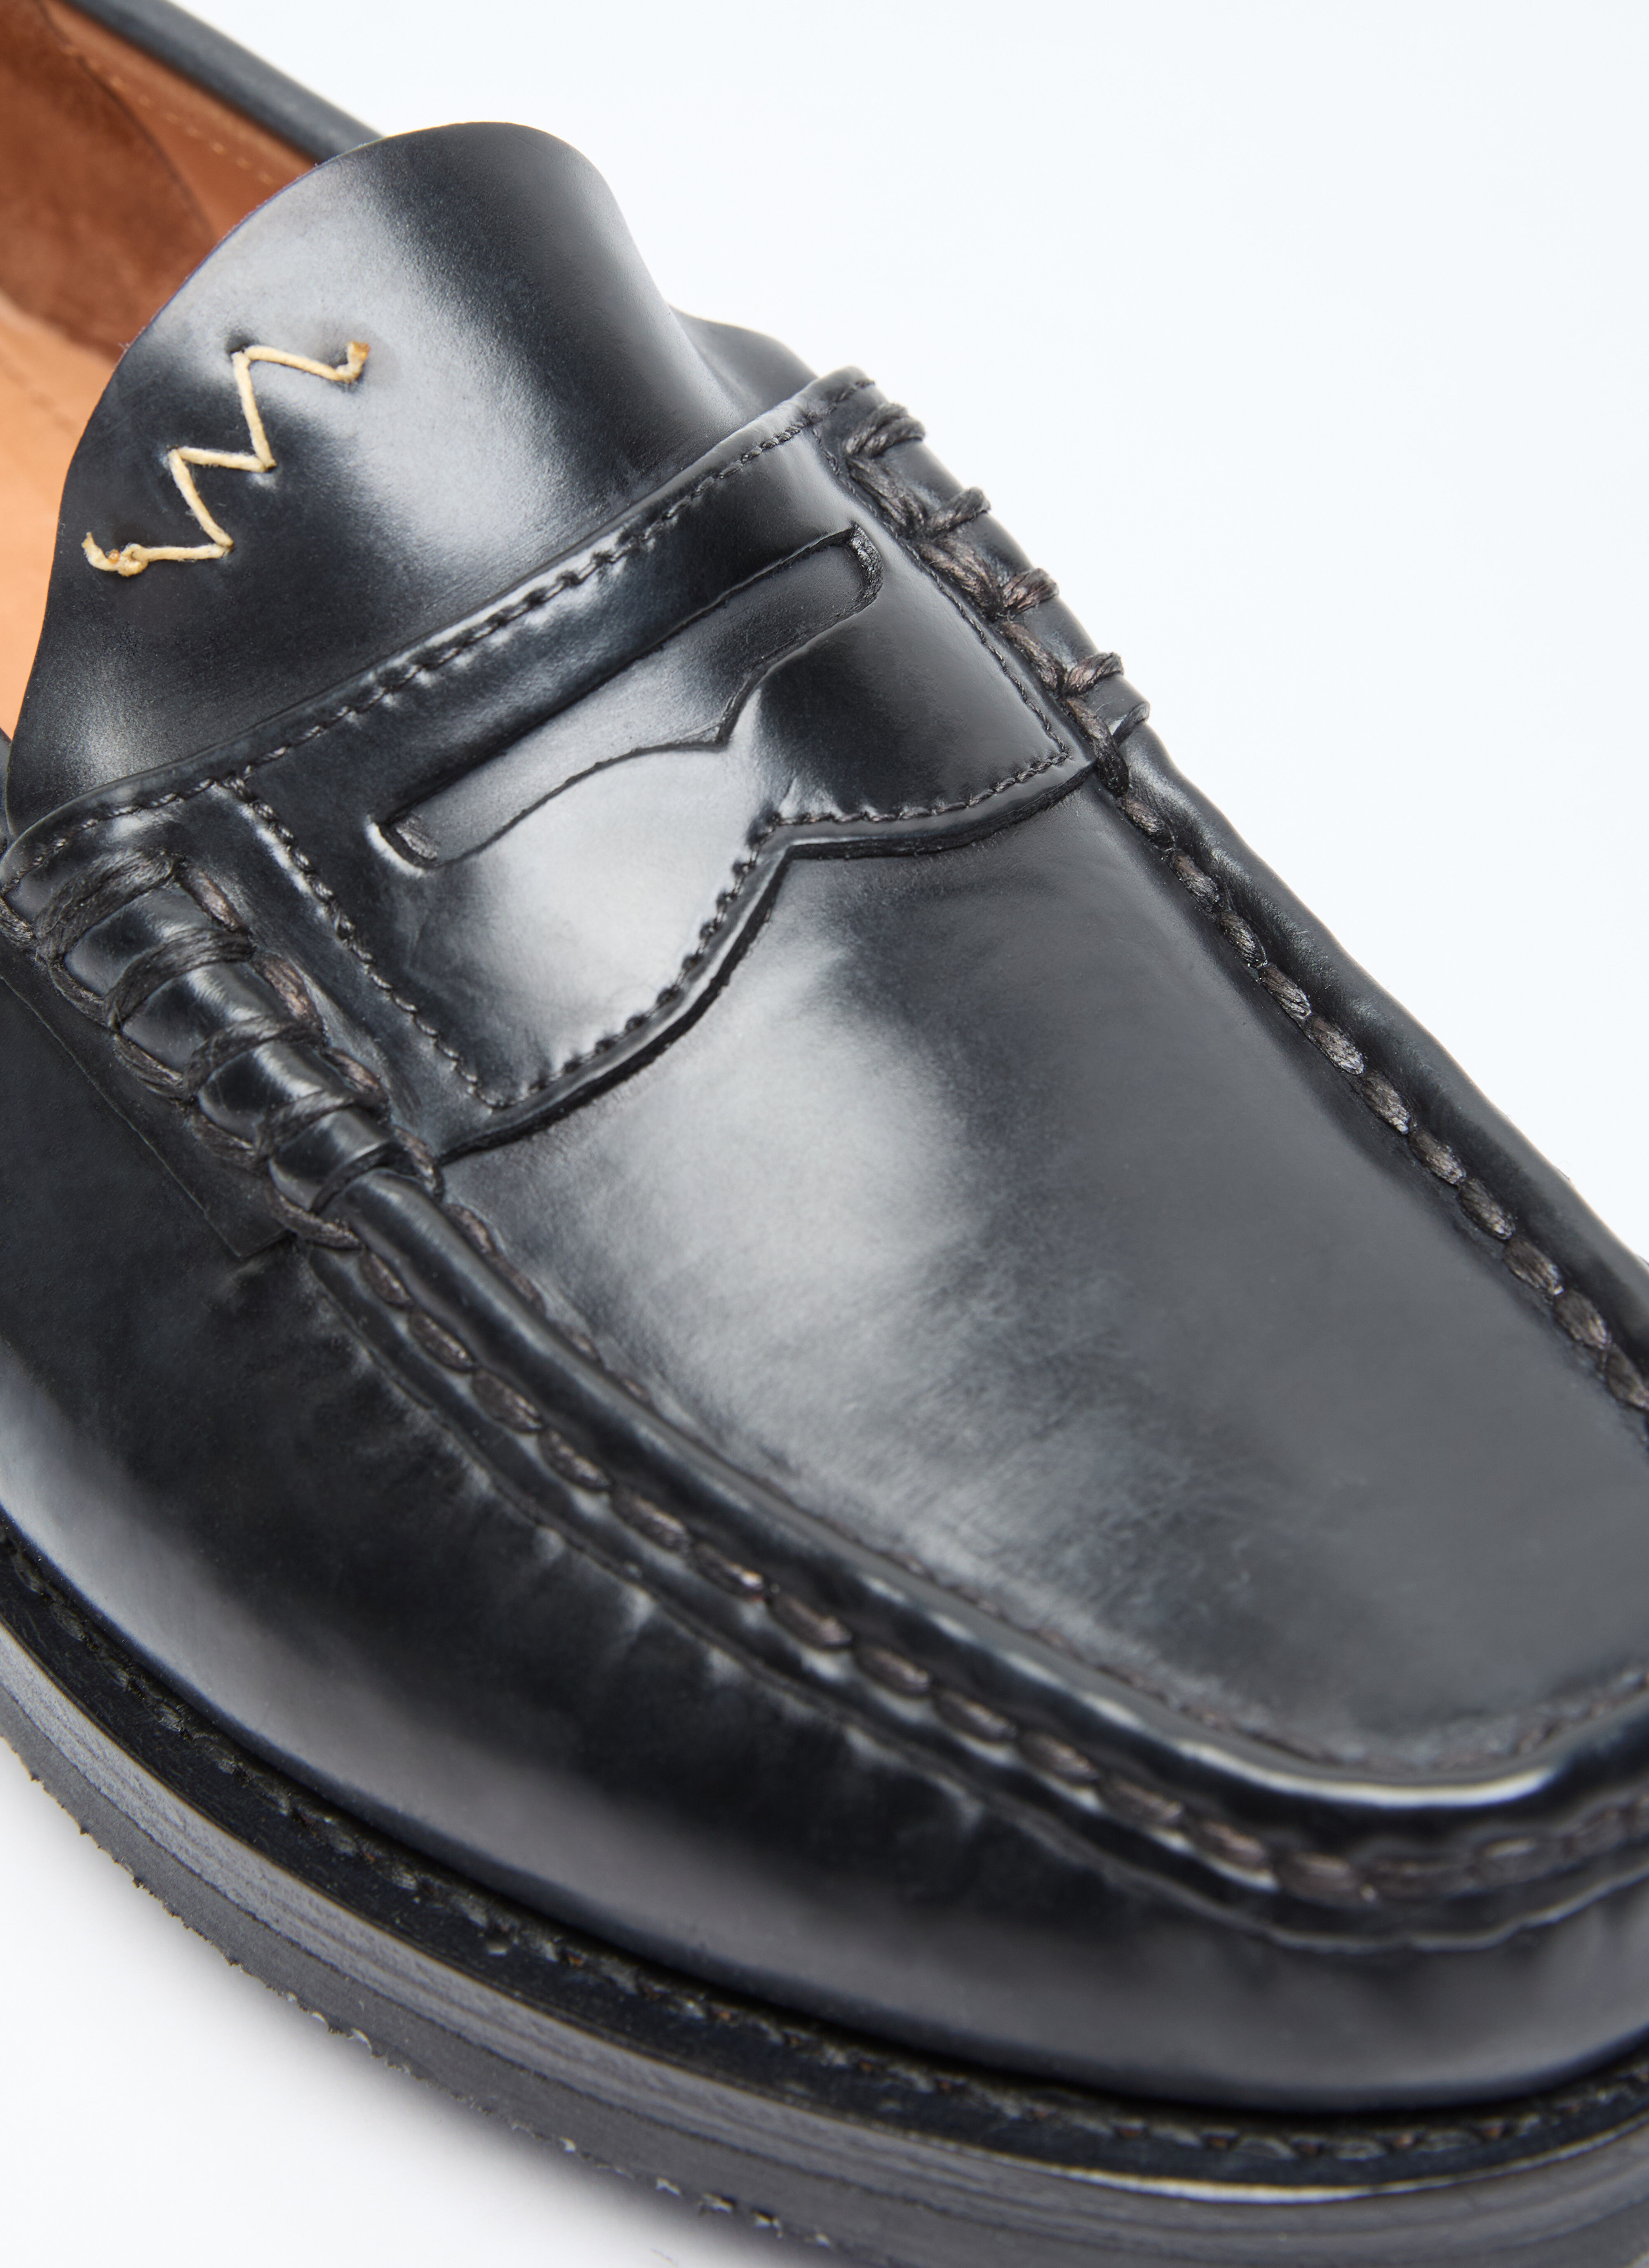 Visvim Men's Fabro-Folk Loafers in Black | LN-CC®